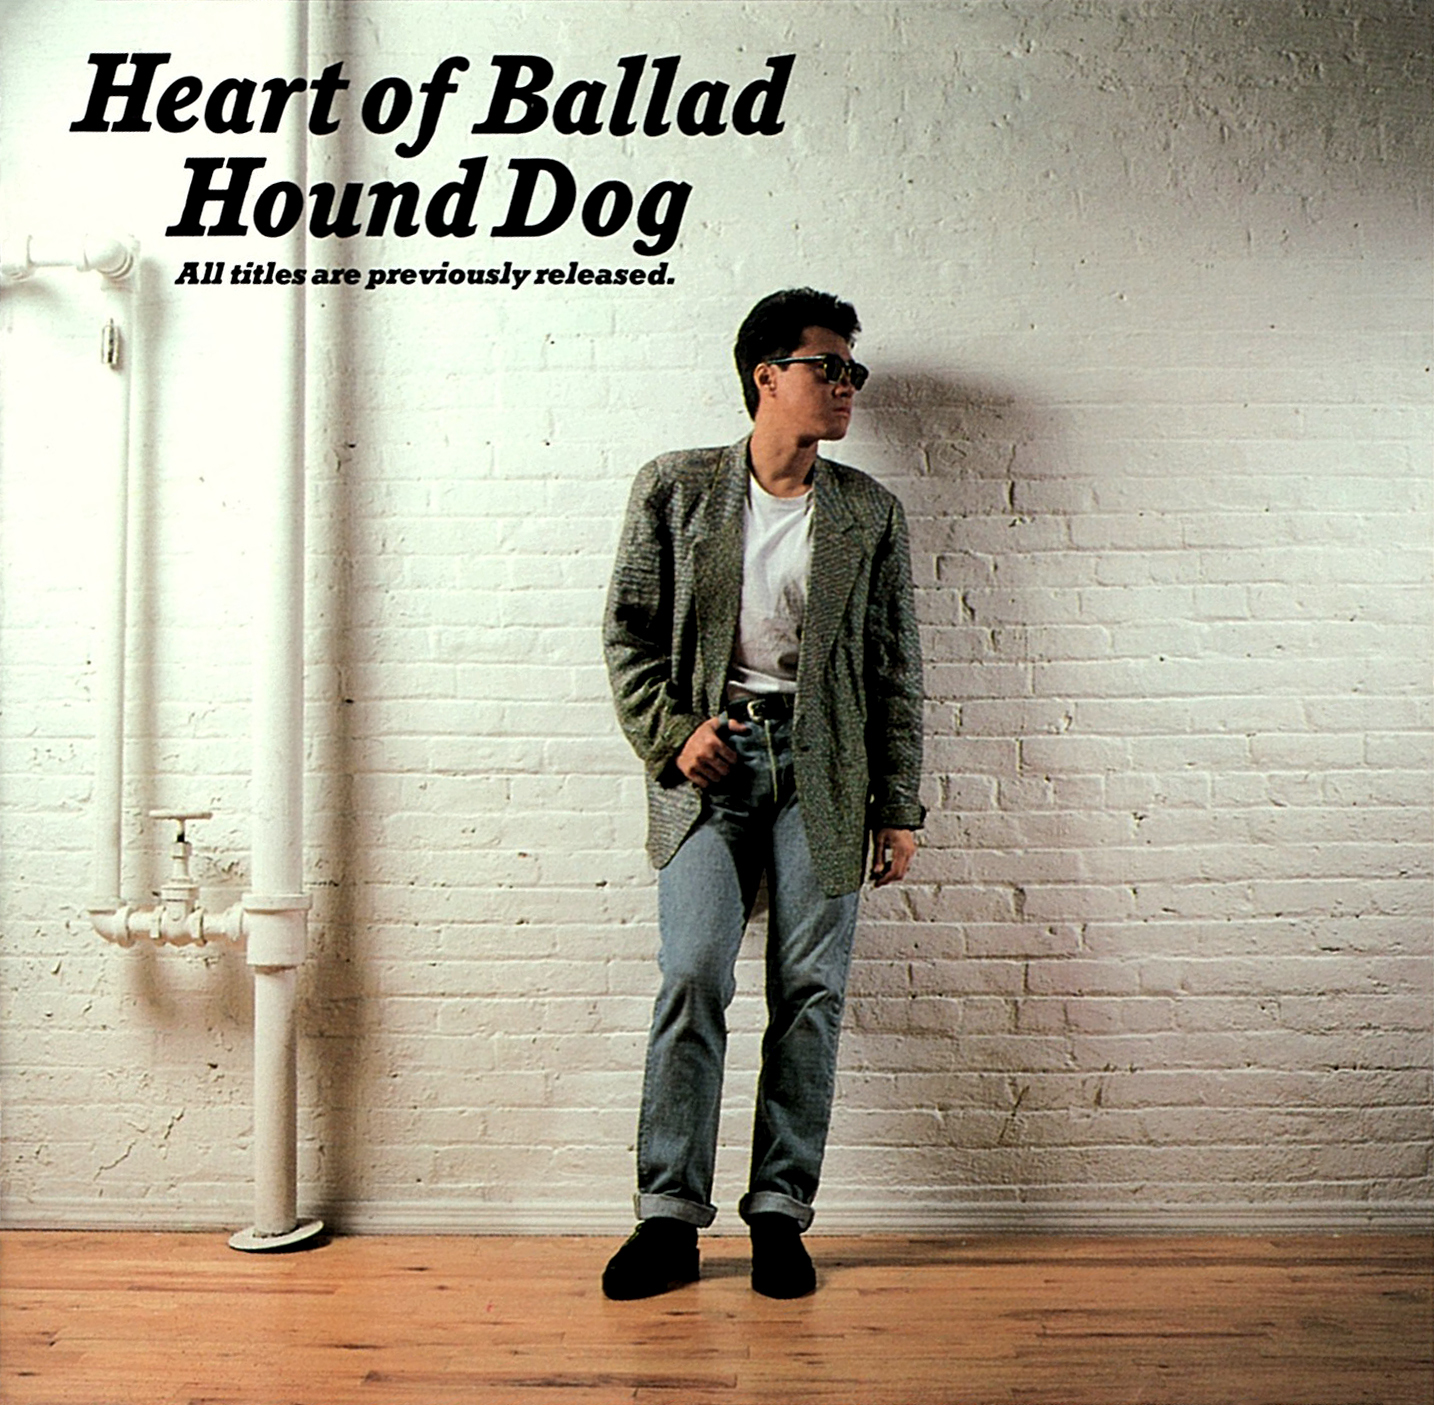 ハウンド・ドッグ (Hound Dog) ベスト・アルバム『Heart of Ballad